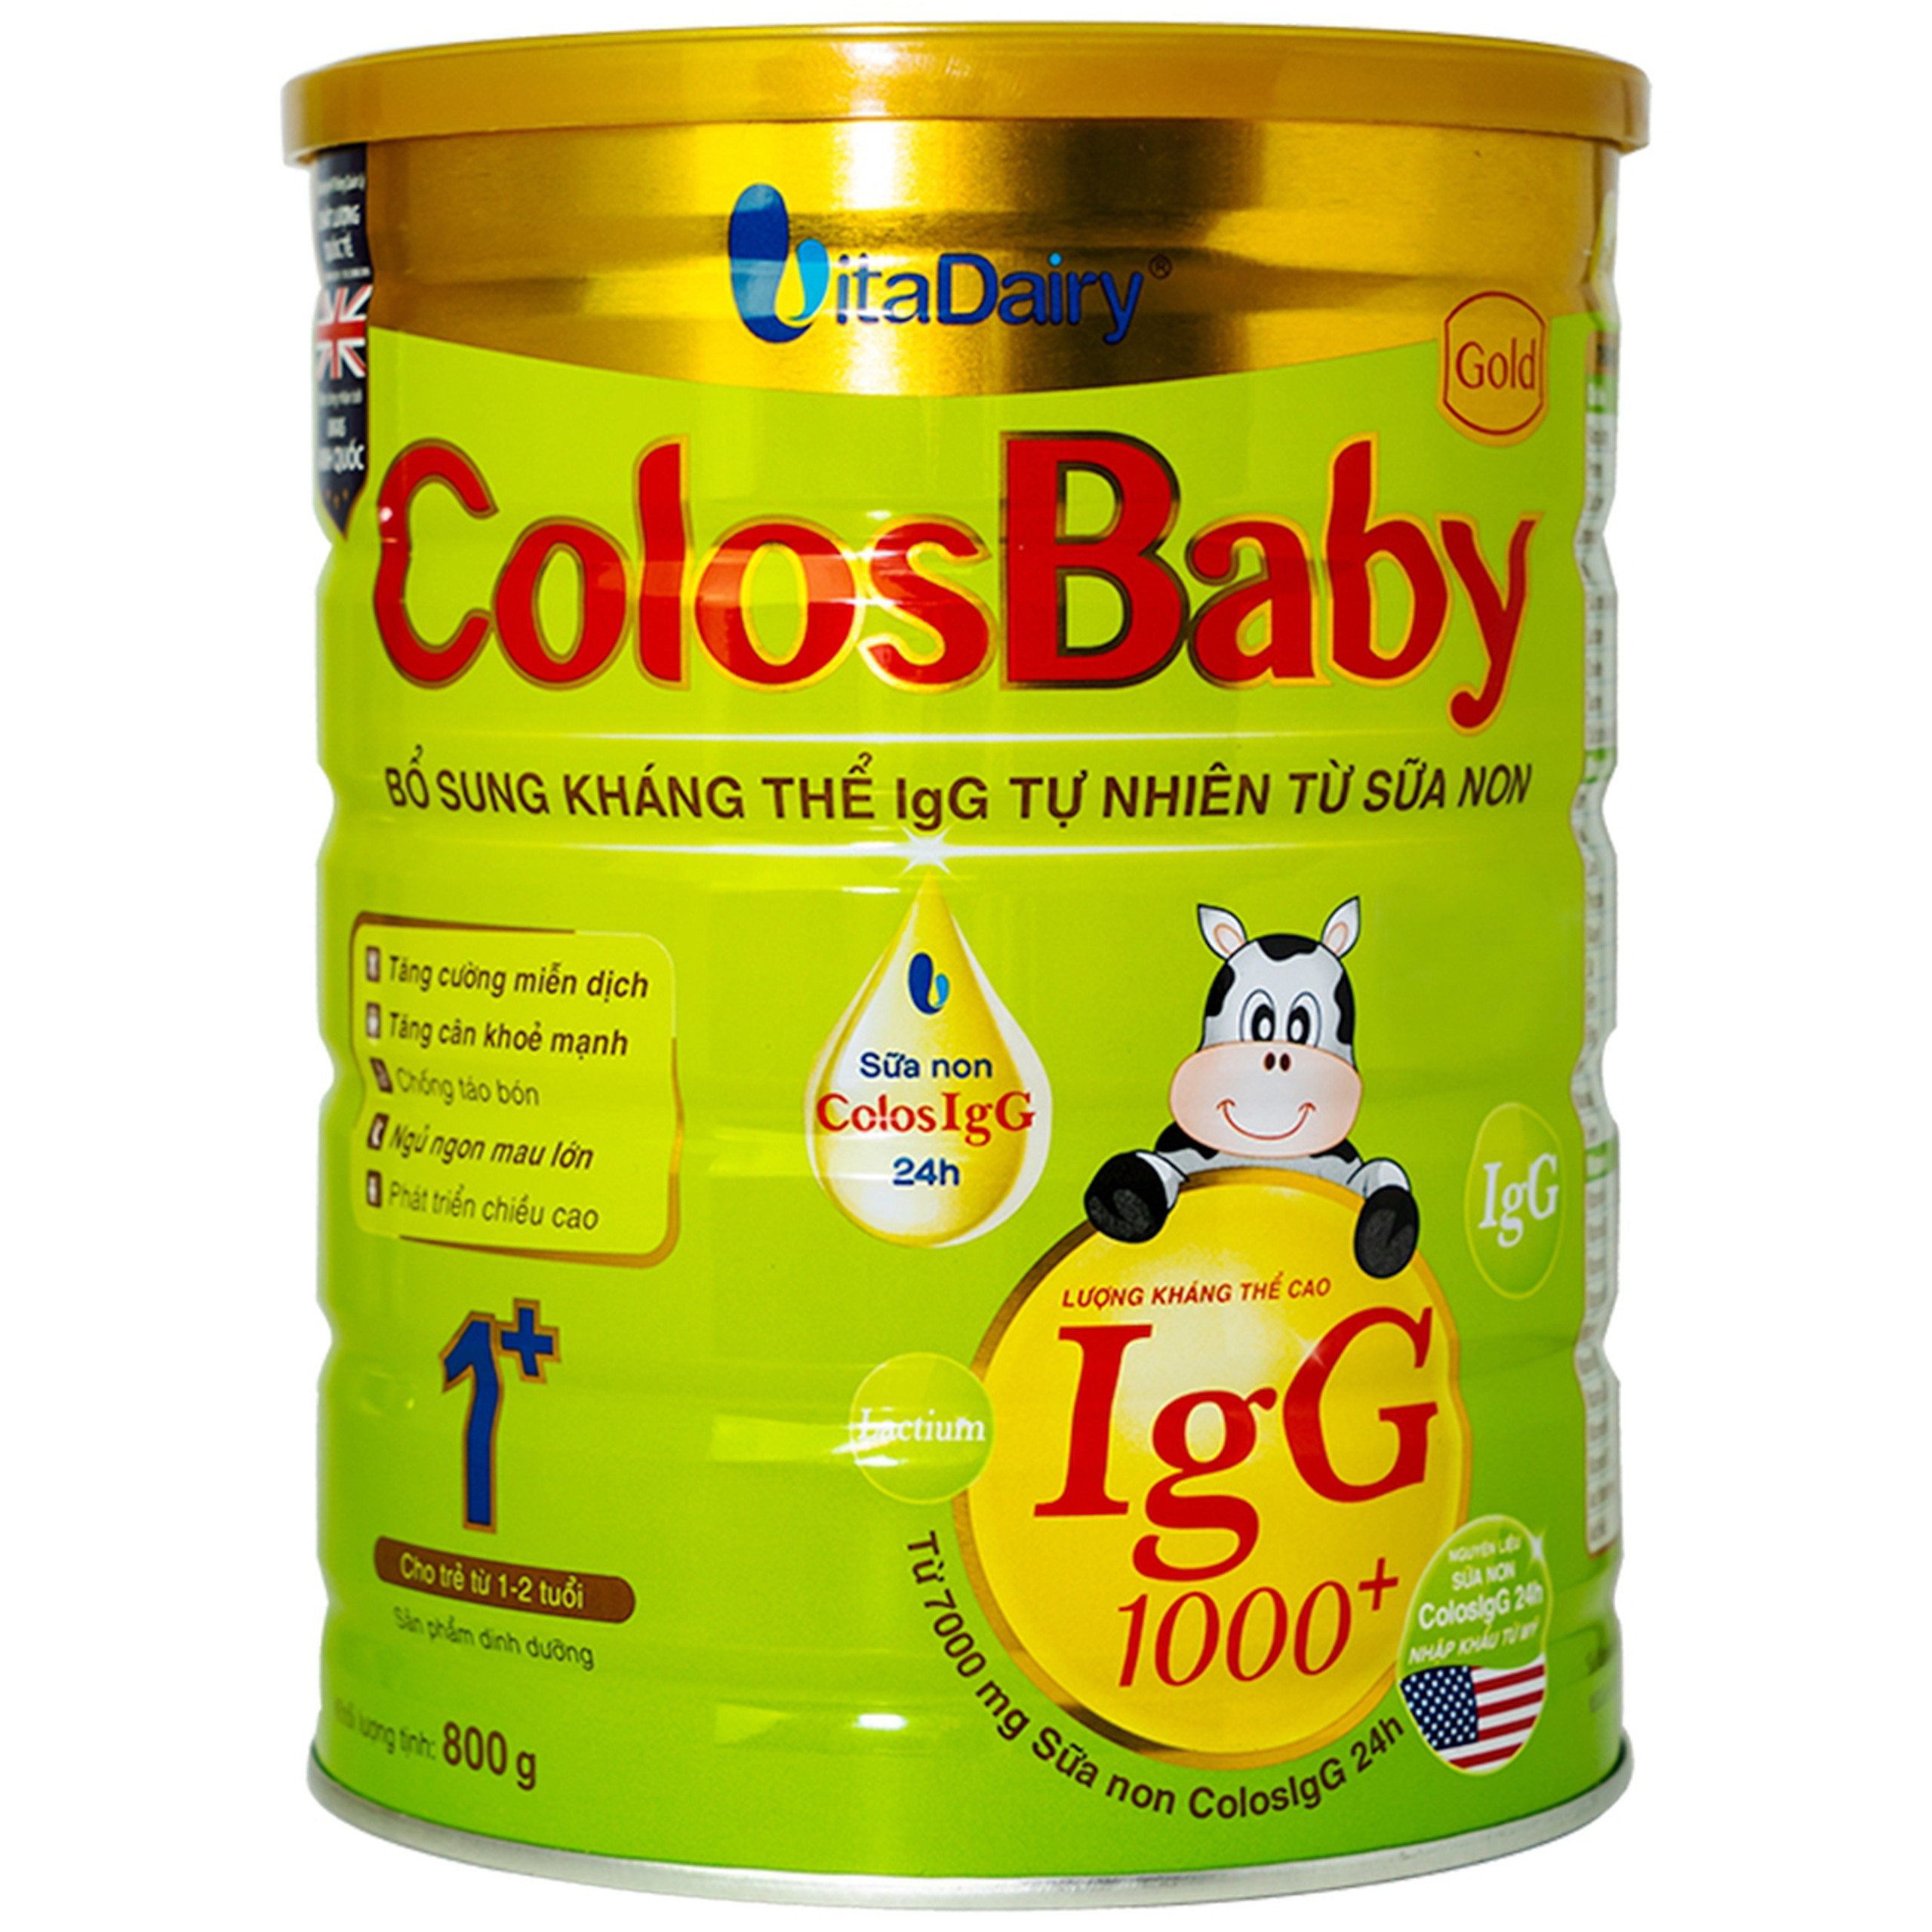 Sữa non ColosBaby Gold VitaDairy bổ sung kháng thể IgG tự nhiên cho trẻ từ 1 - 2 tuổi (800g)